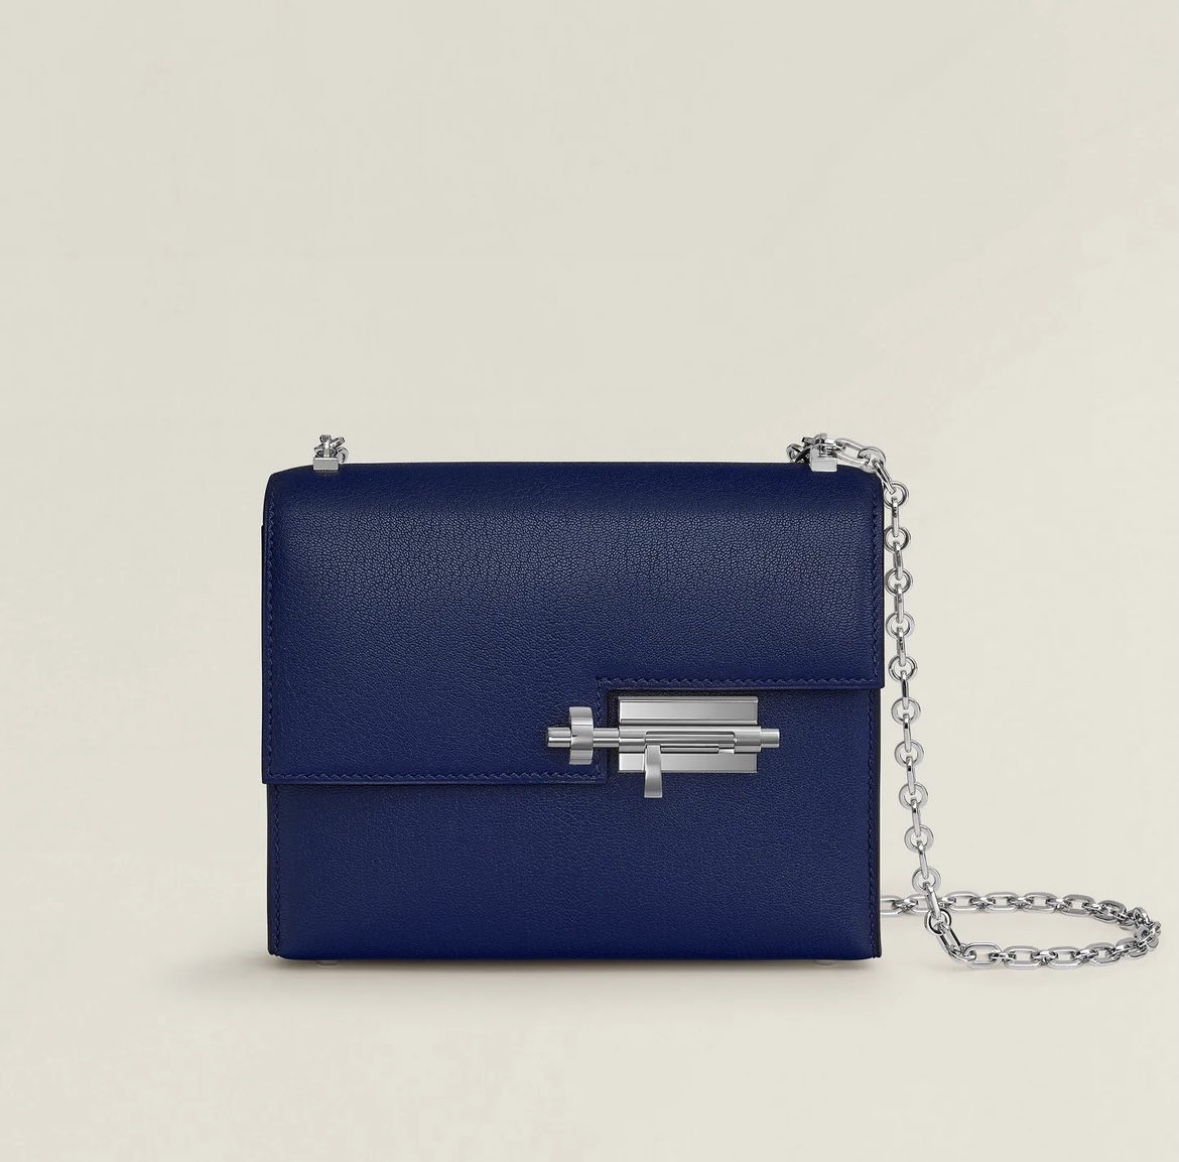 愛馬仕插銷包官網多少錢 Hermès Verrou Chaîne Mini Bag Bleu Saphir